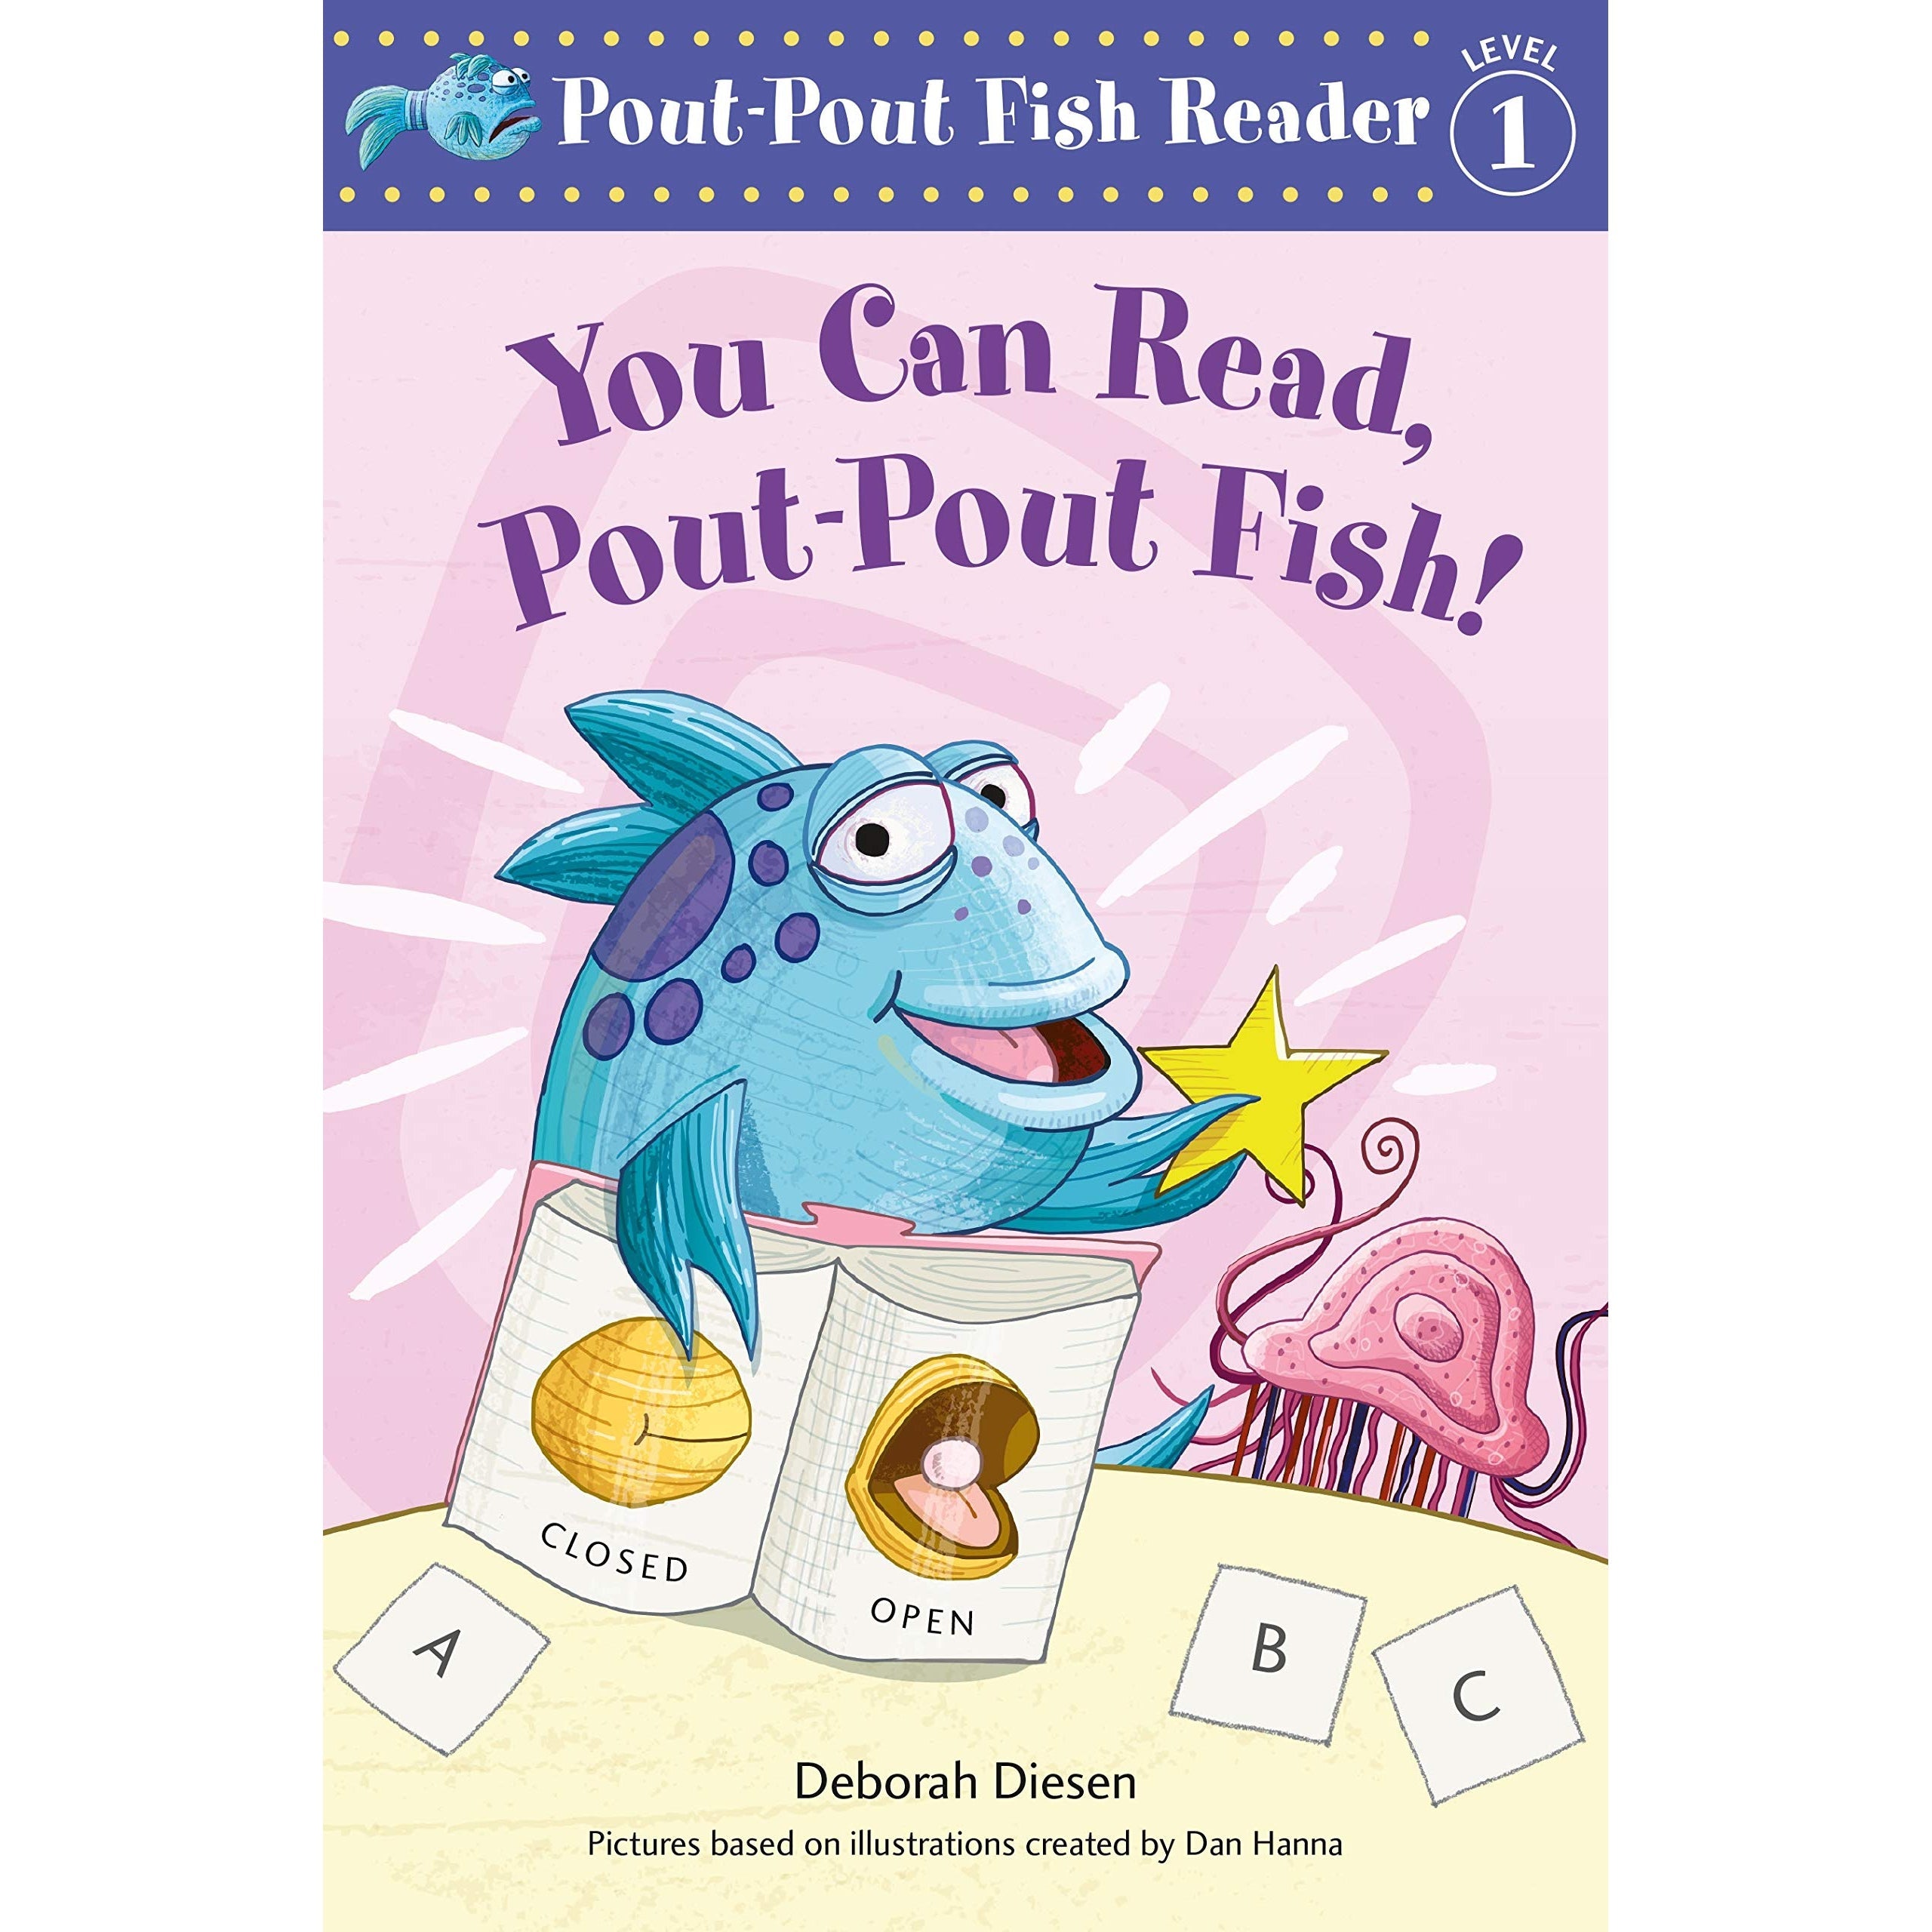 Macmillan Publishers: Pout-Pout Fish Reader - You Can Read, Pout-Pout Fish!-MACMILLAN PUBLISHERS-Little Giant Kidz